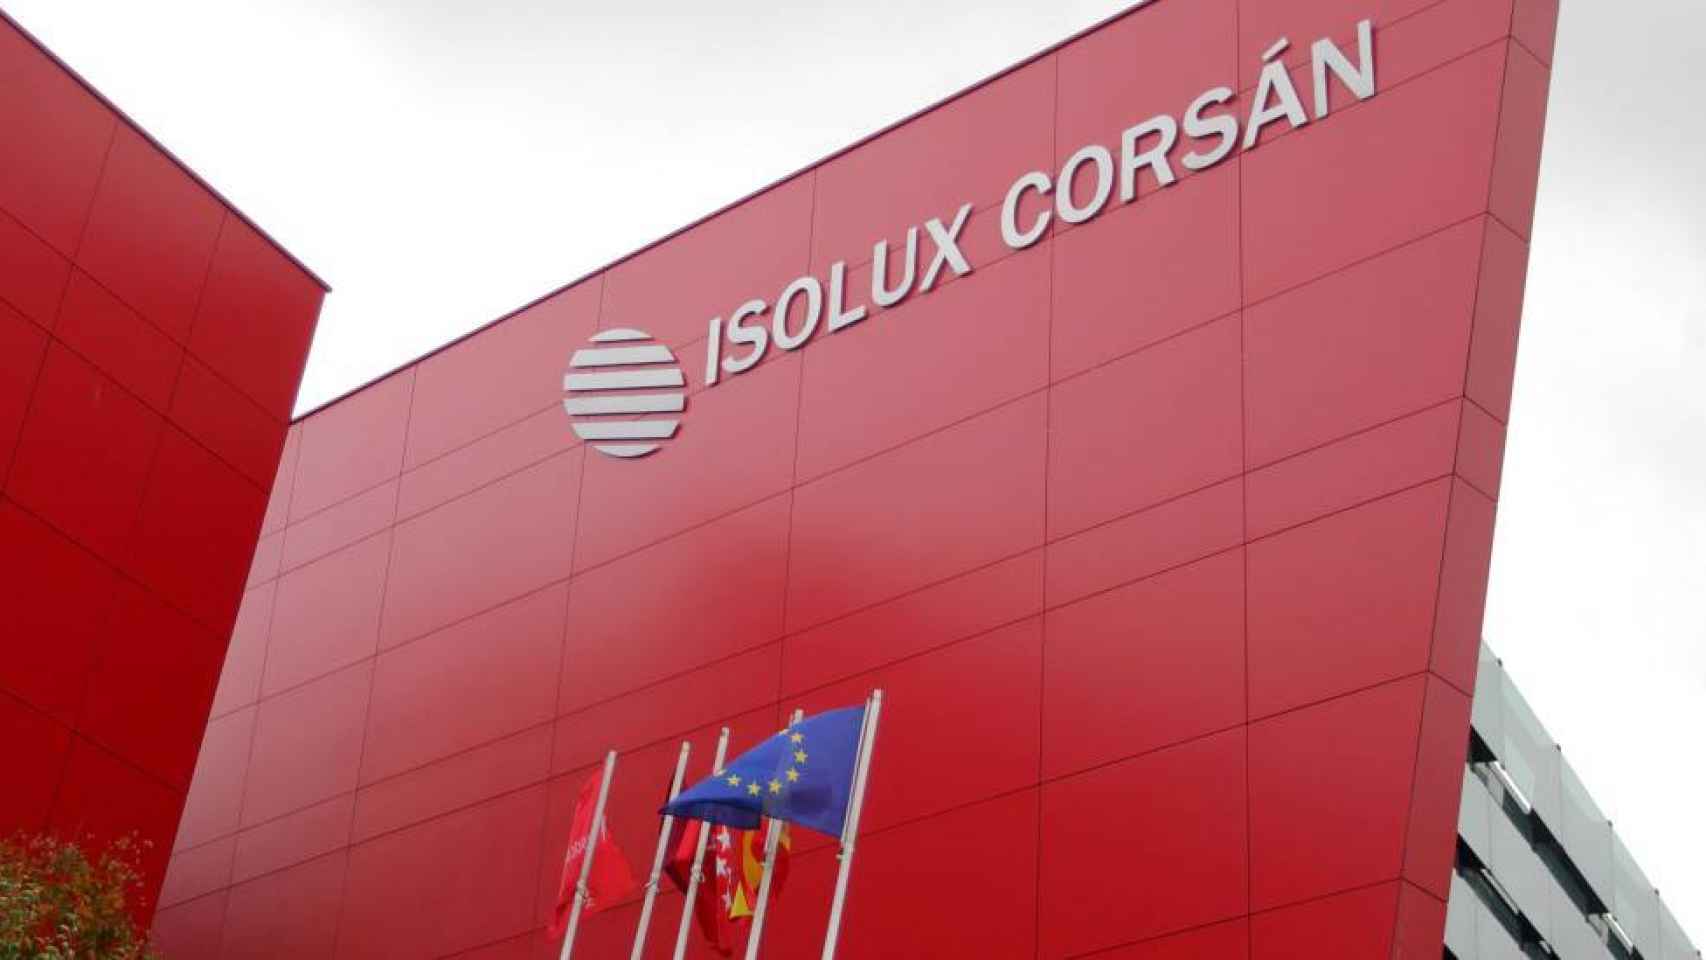 Isolux acelera la venta de activos mientras su tesorería se debilita